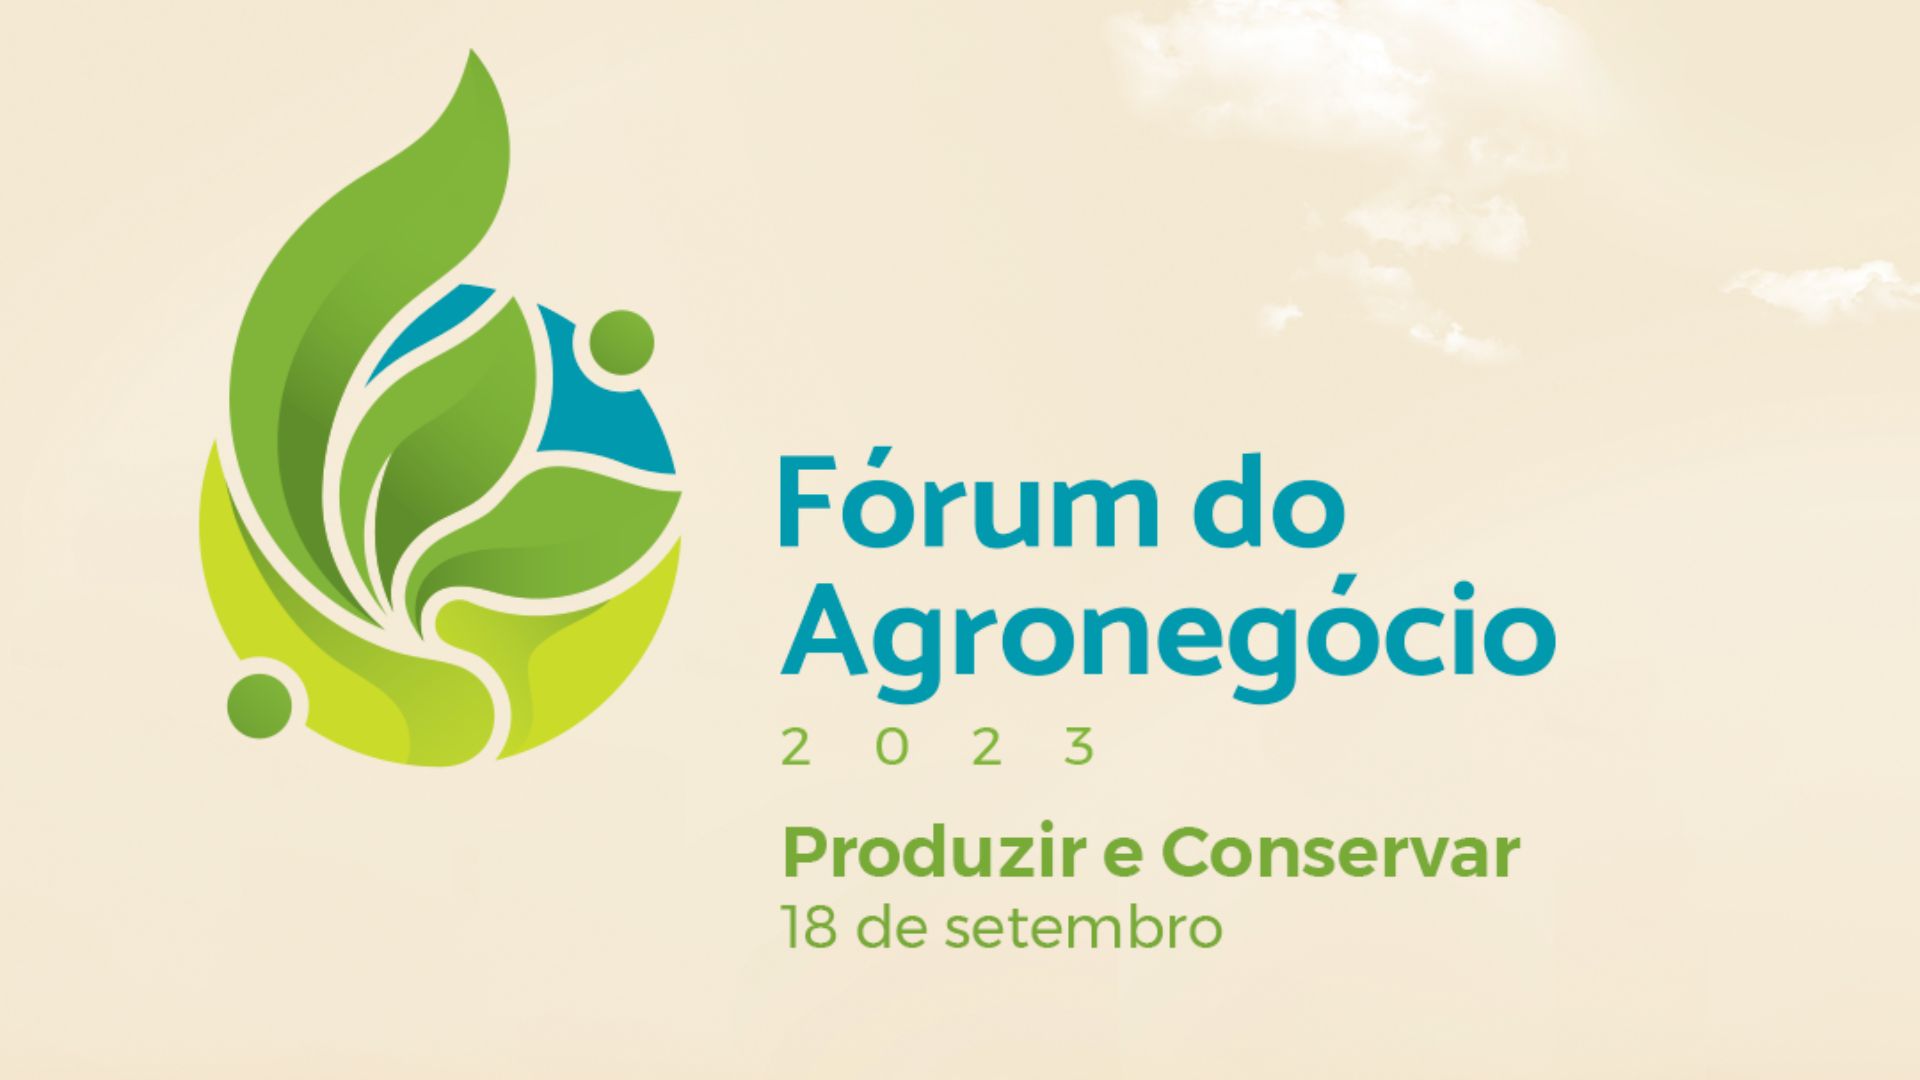 Fórum do Agronegócio reunirá lideranças nacionais e internacionais para debater o tema “Produzir e Conservar”